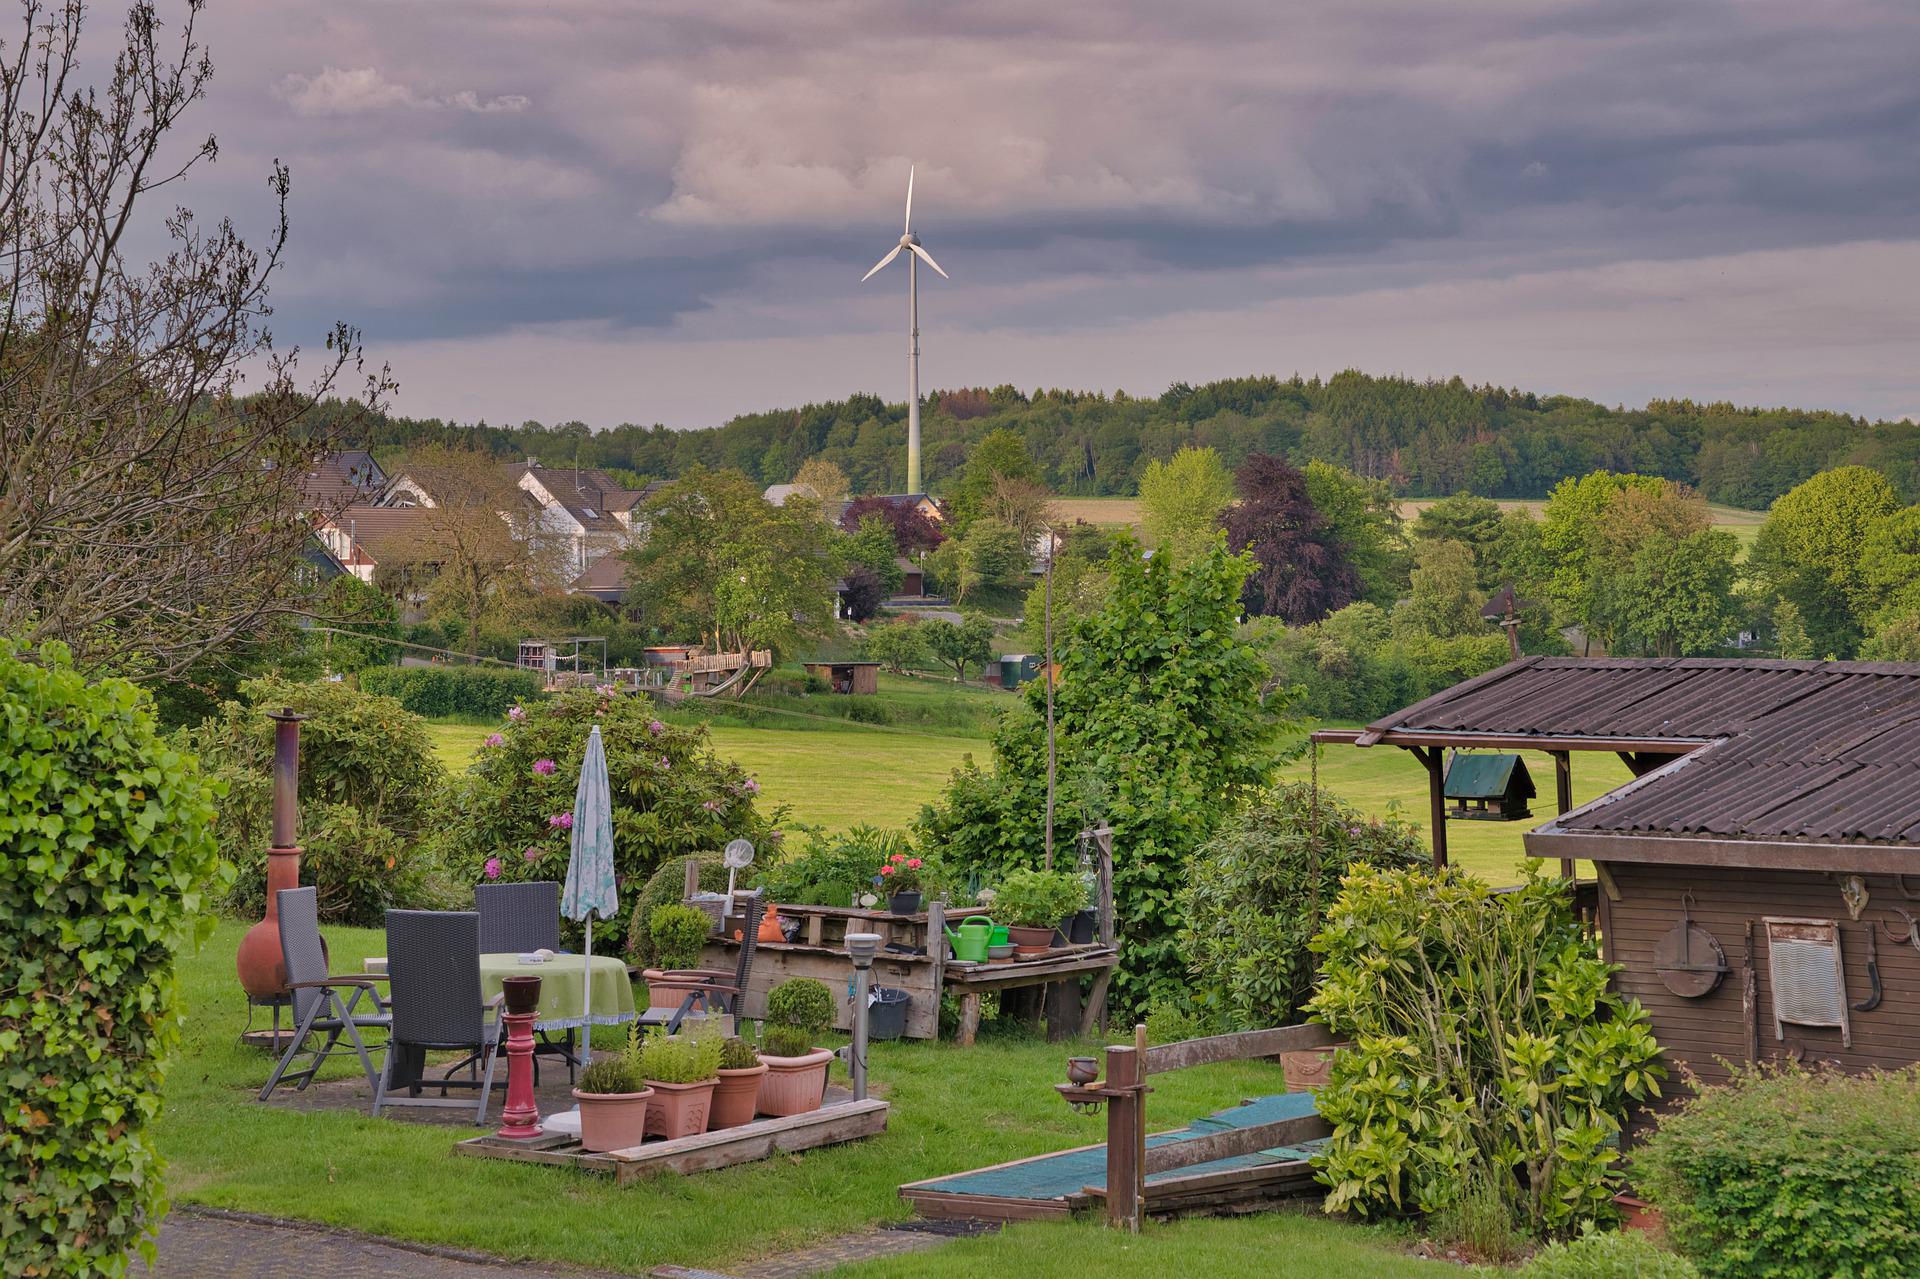 Habecks Pläne zur Energiewende: Windräder vor jeder Haustür?